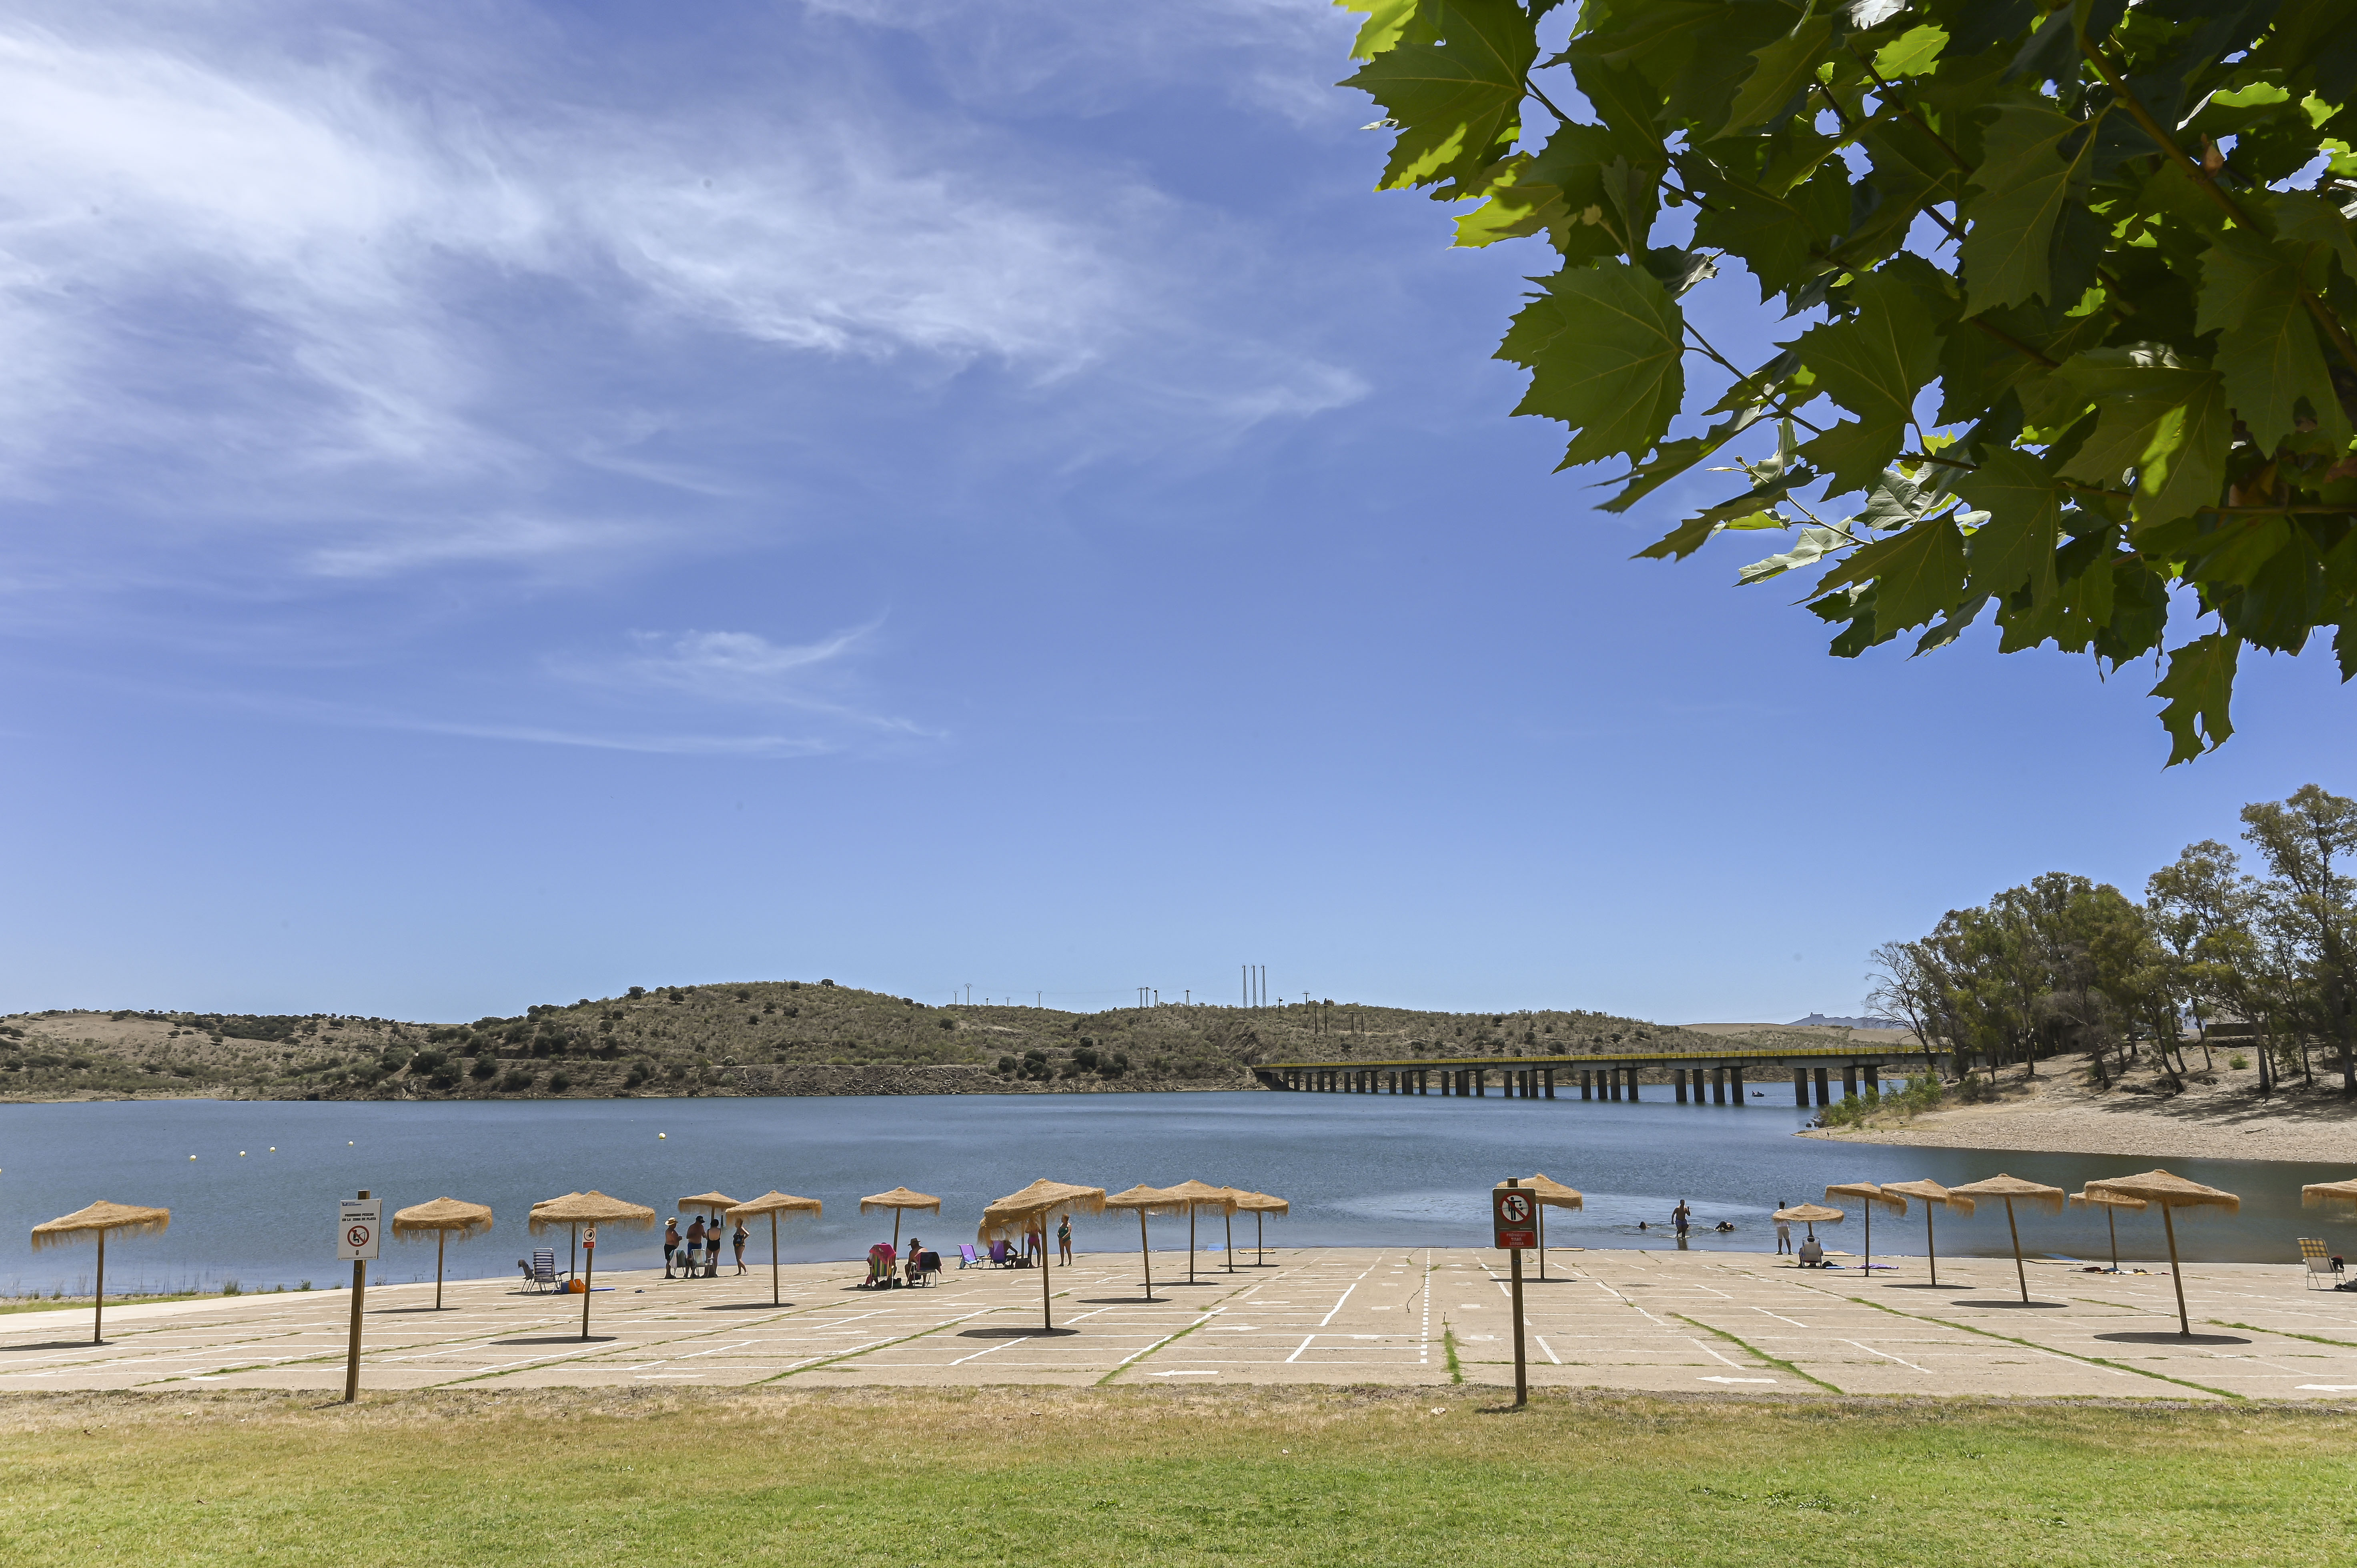 Image 1 of article Extremadura revalida la distinción Bandera Azul para sus 9 playas de interior y el puerto deportivo de Orellana la Vieja